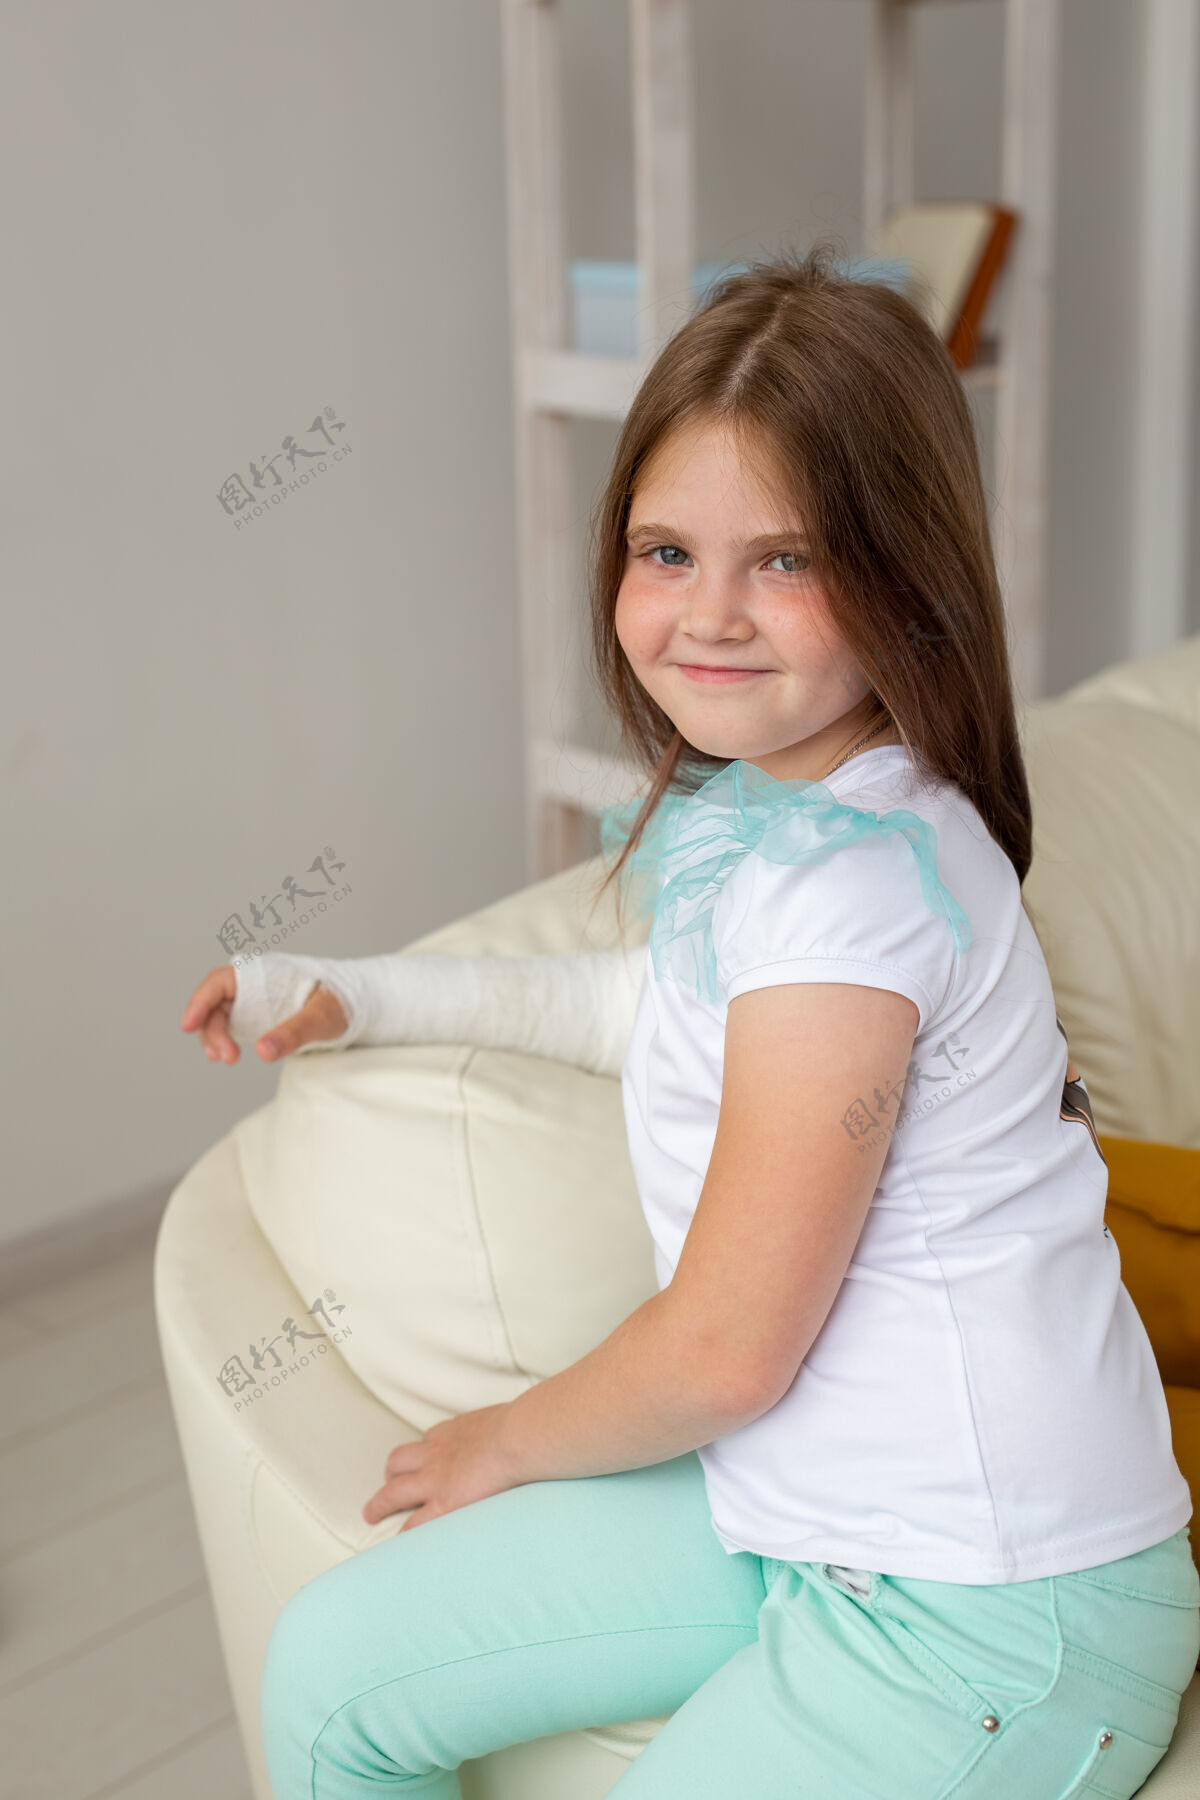 破裂手腕或手臂受伤的孩子在沙发上微笑着玩耍积极的态度沙发房子人类